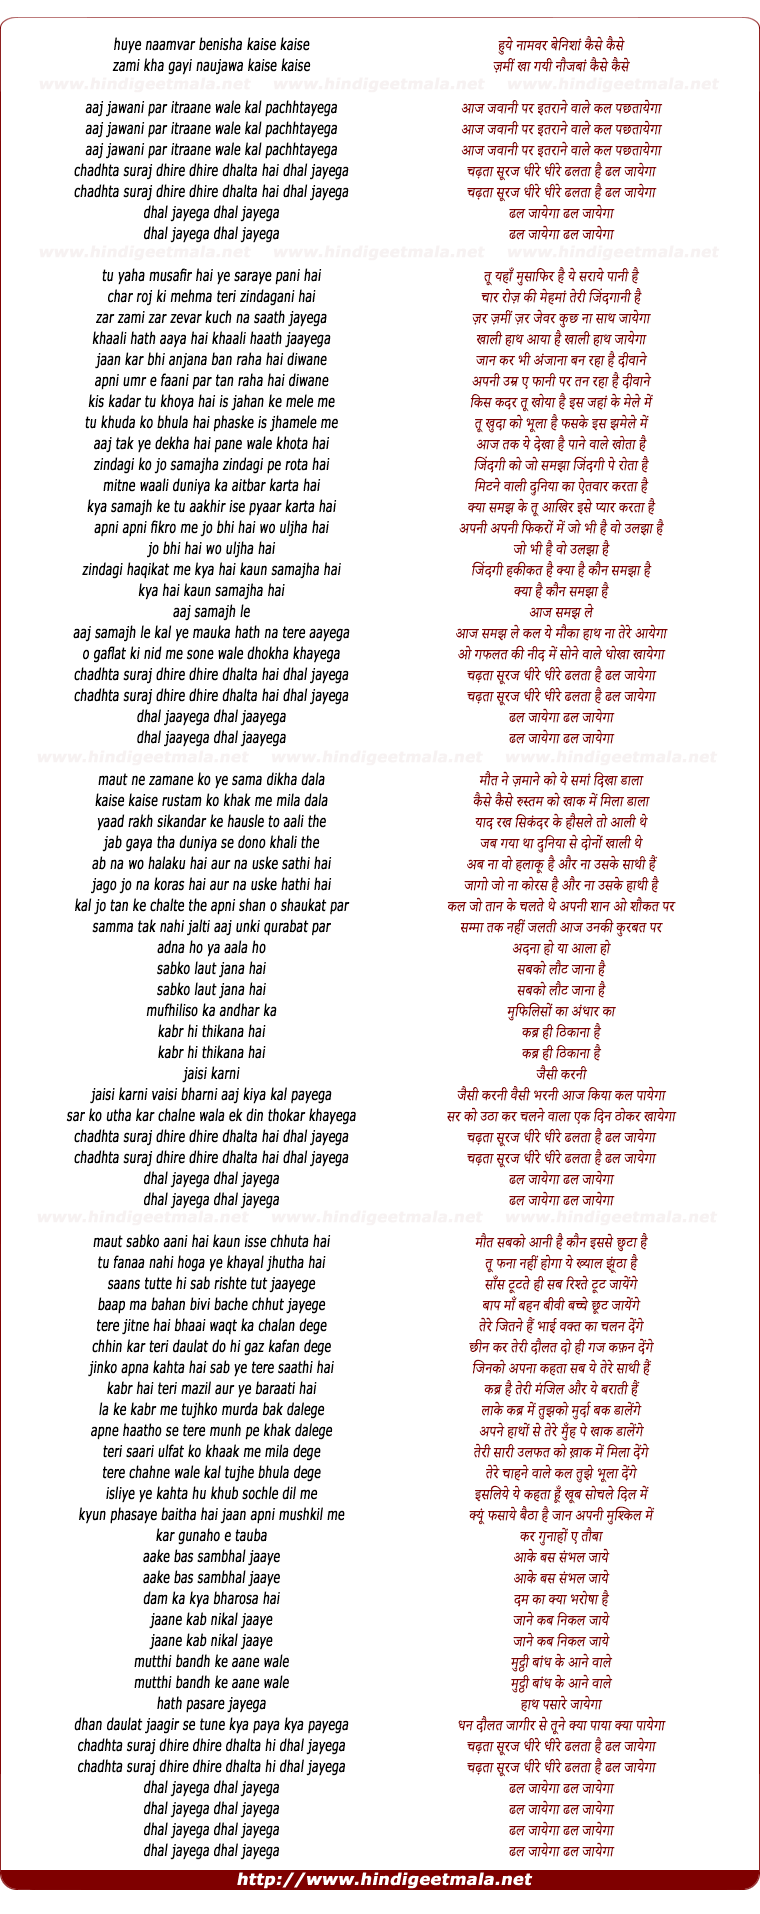 lyrics of song Chadhataa Suraj Dhire Dhire Dhalataa Hai Dhal Jaayegaa